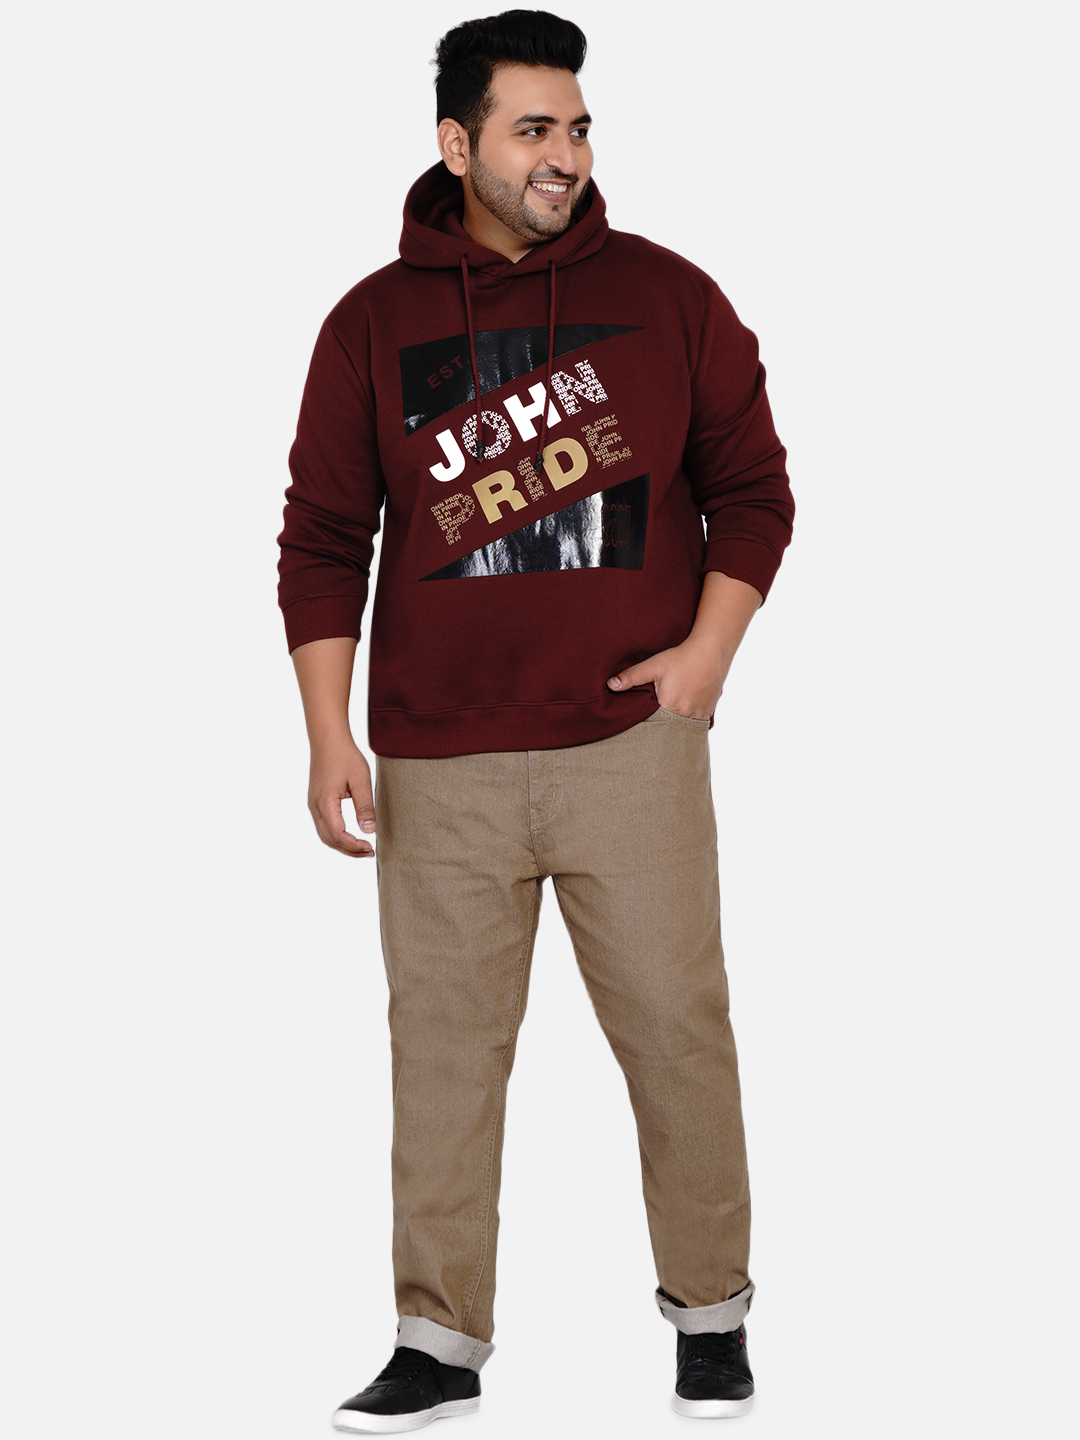 winterwear/sweatshirts/JPSWT75032A/jpswt75032a-6.jpg